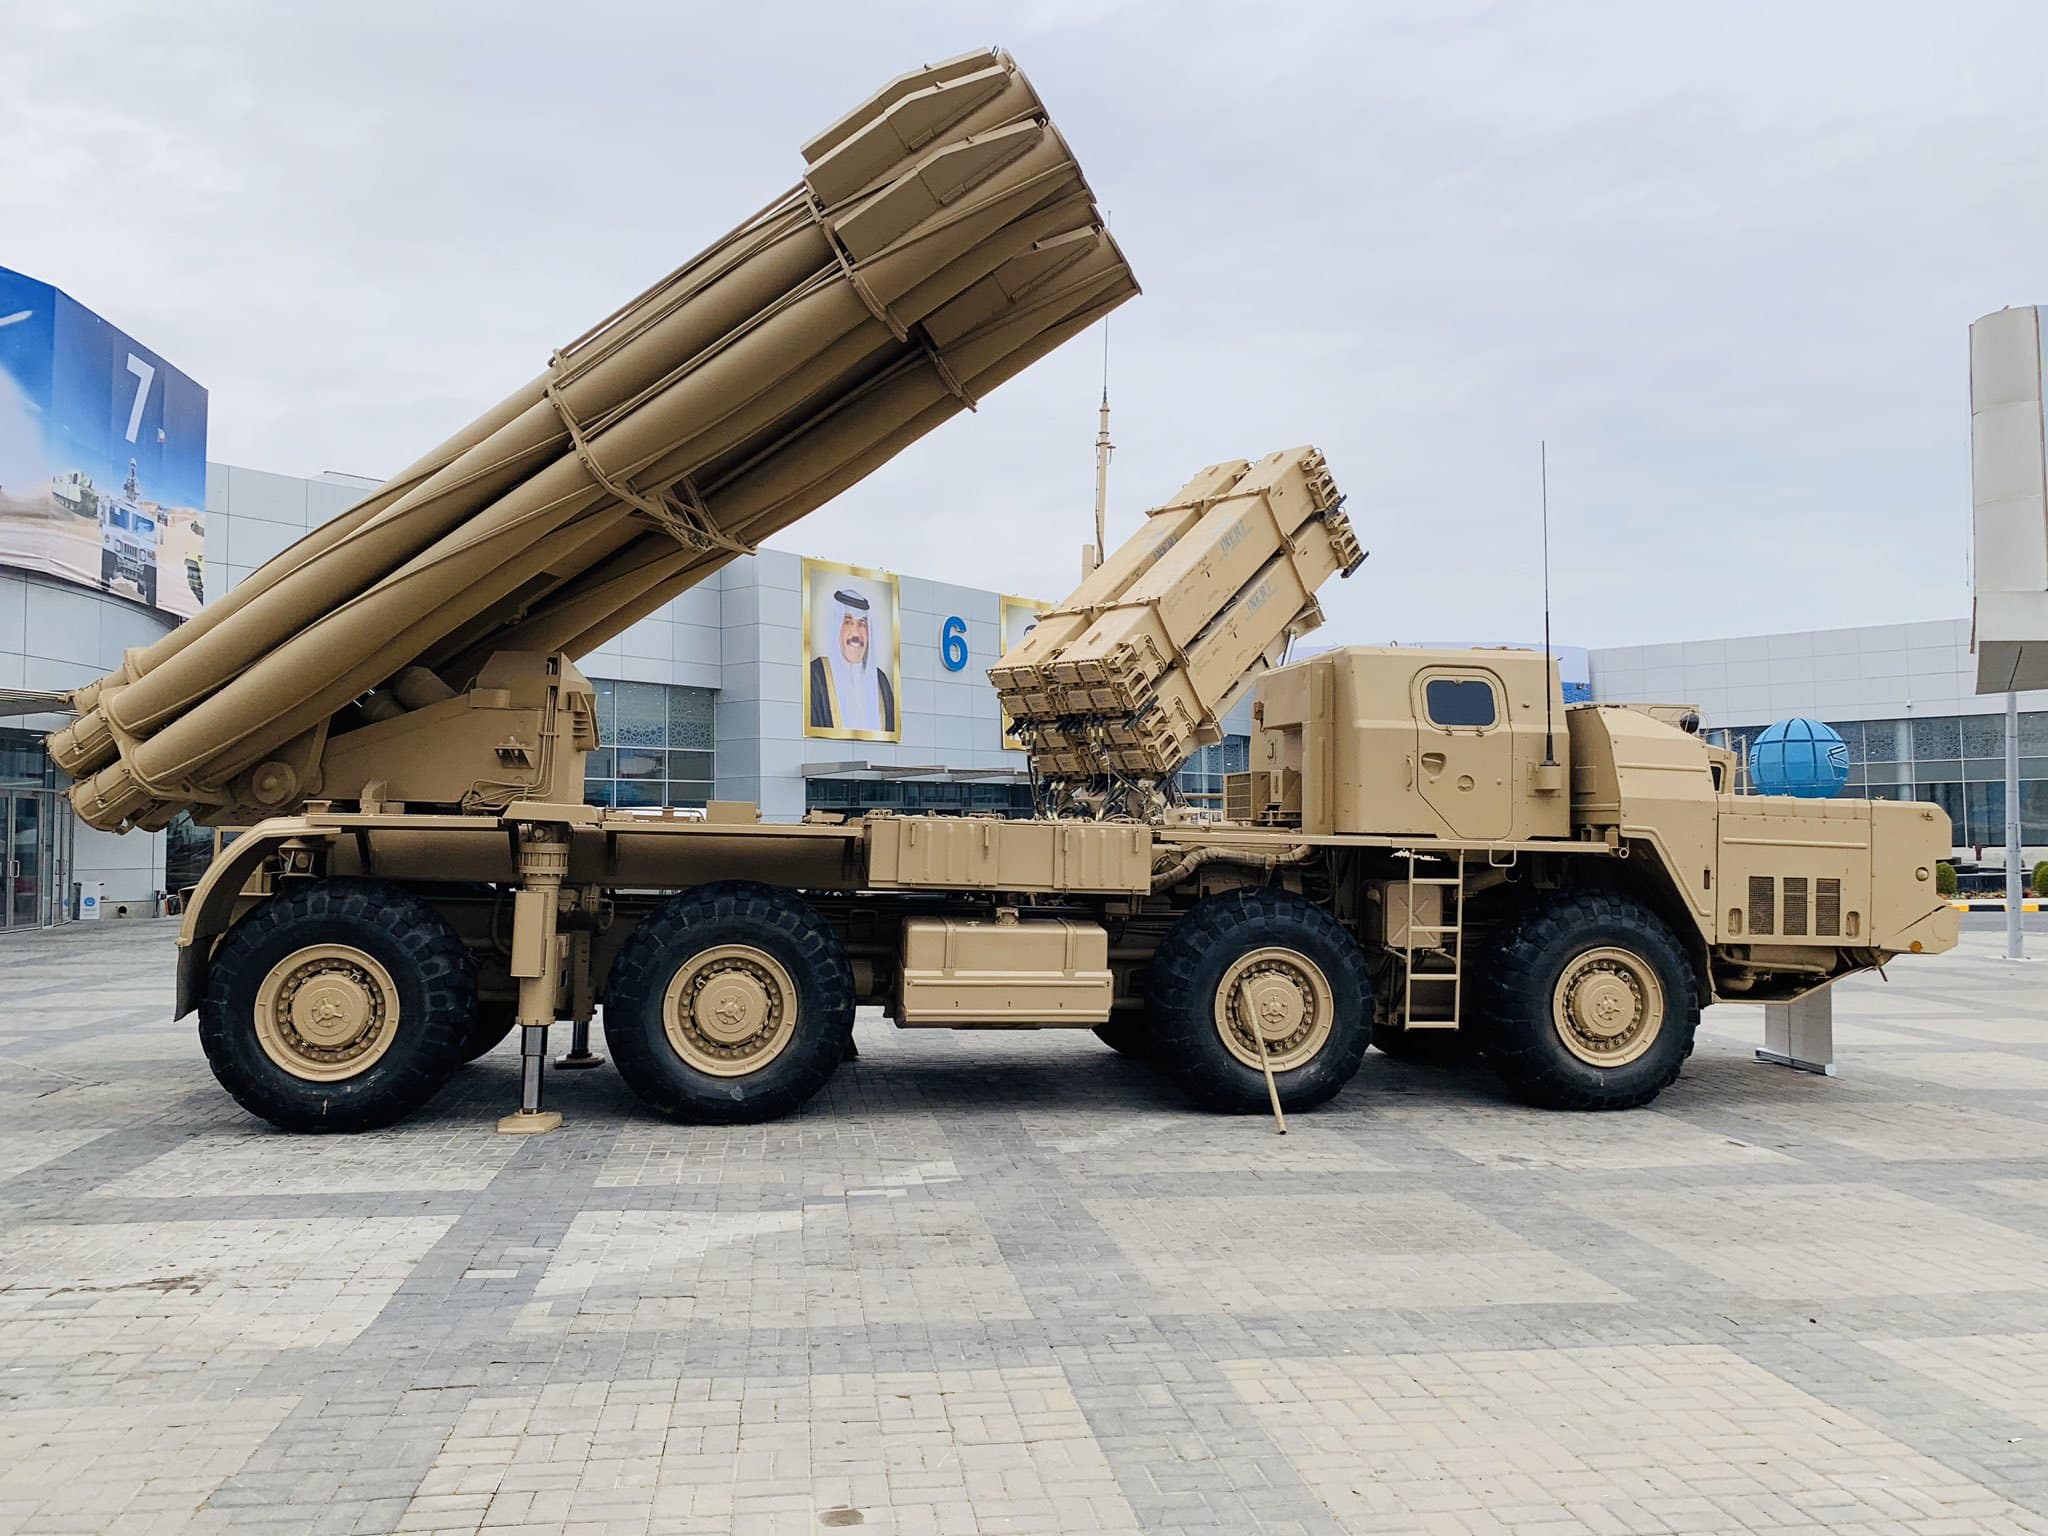 راجمة صواريخ “سميرتش” القوة الضاربة في القوات البرية الكويتية